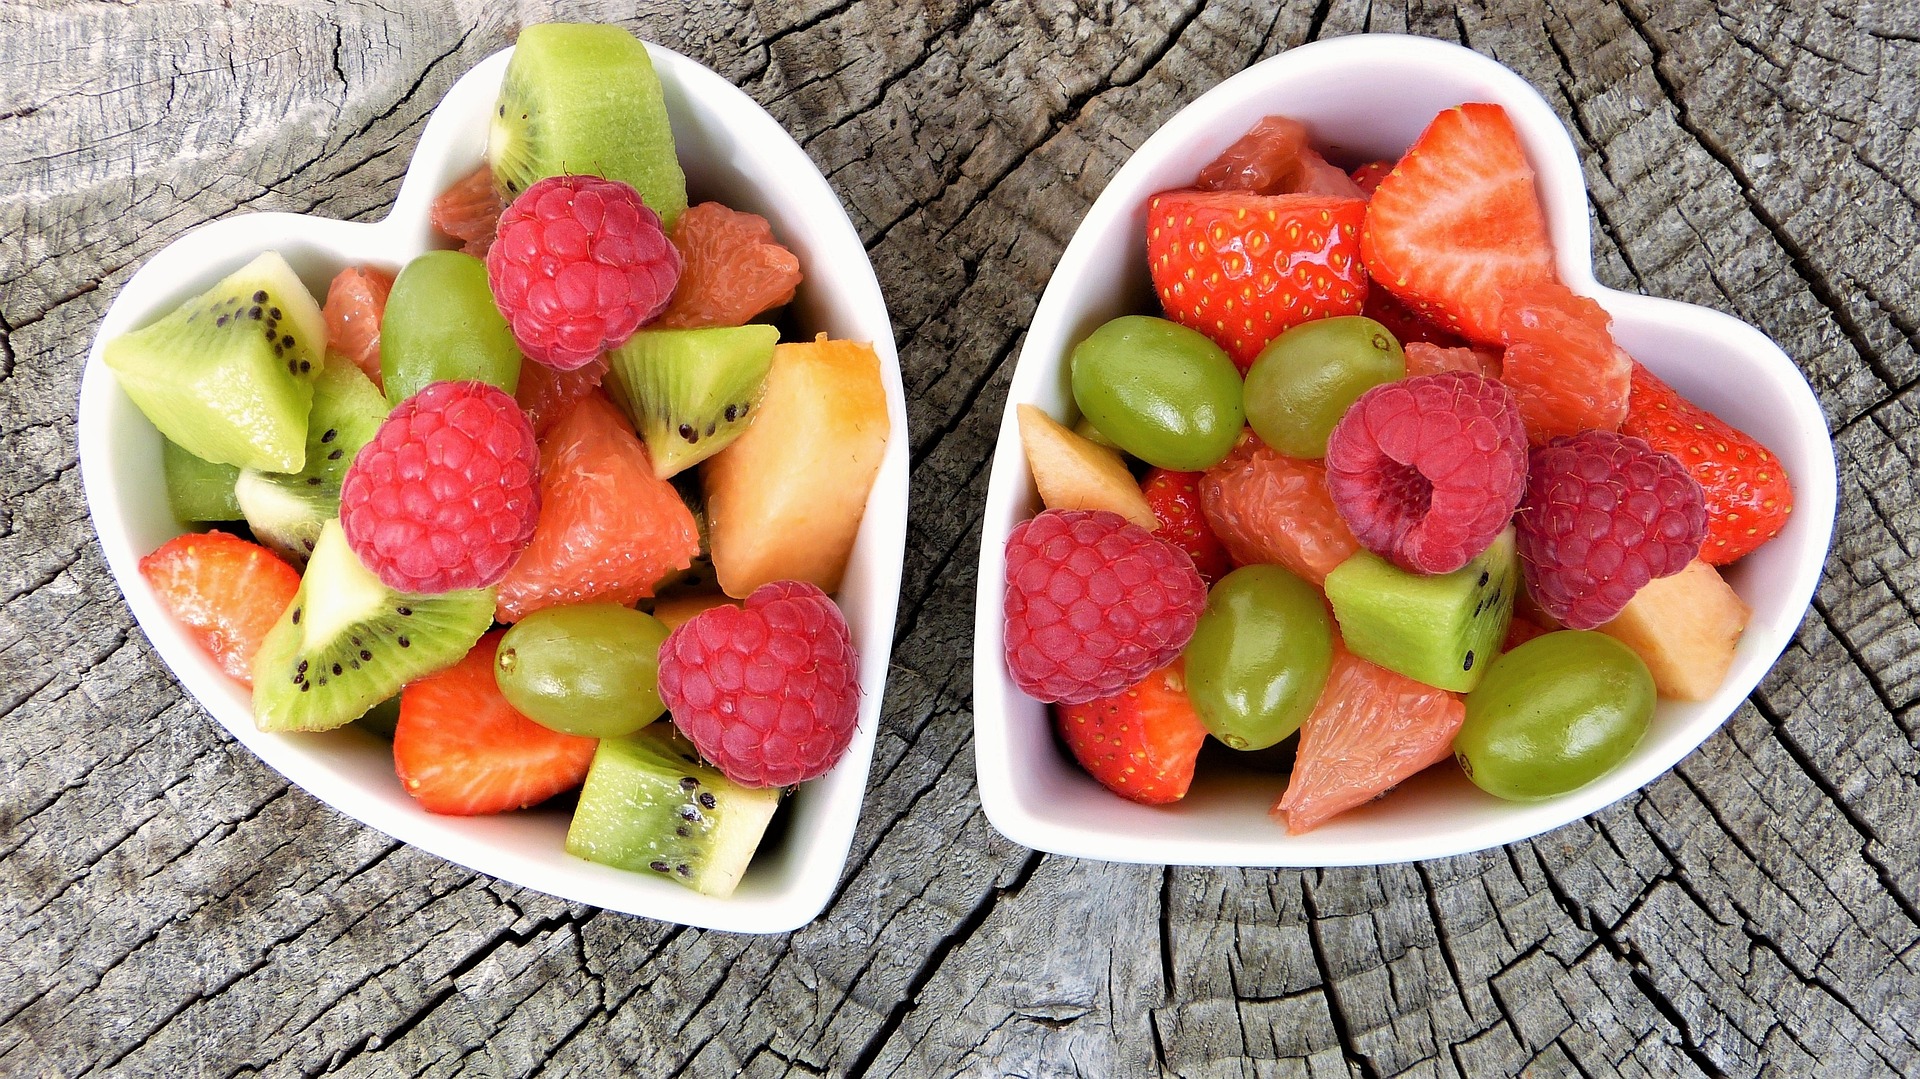 Frutas do verão: conheça as melhores opções e saiba como aproveitá-las